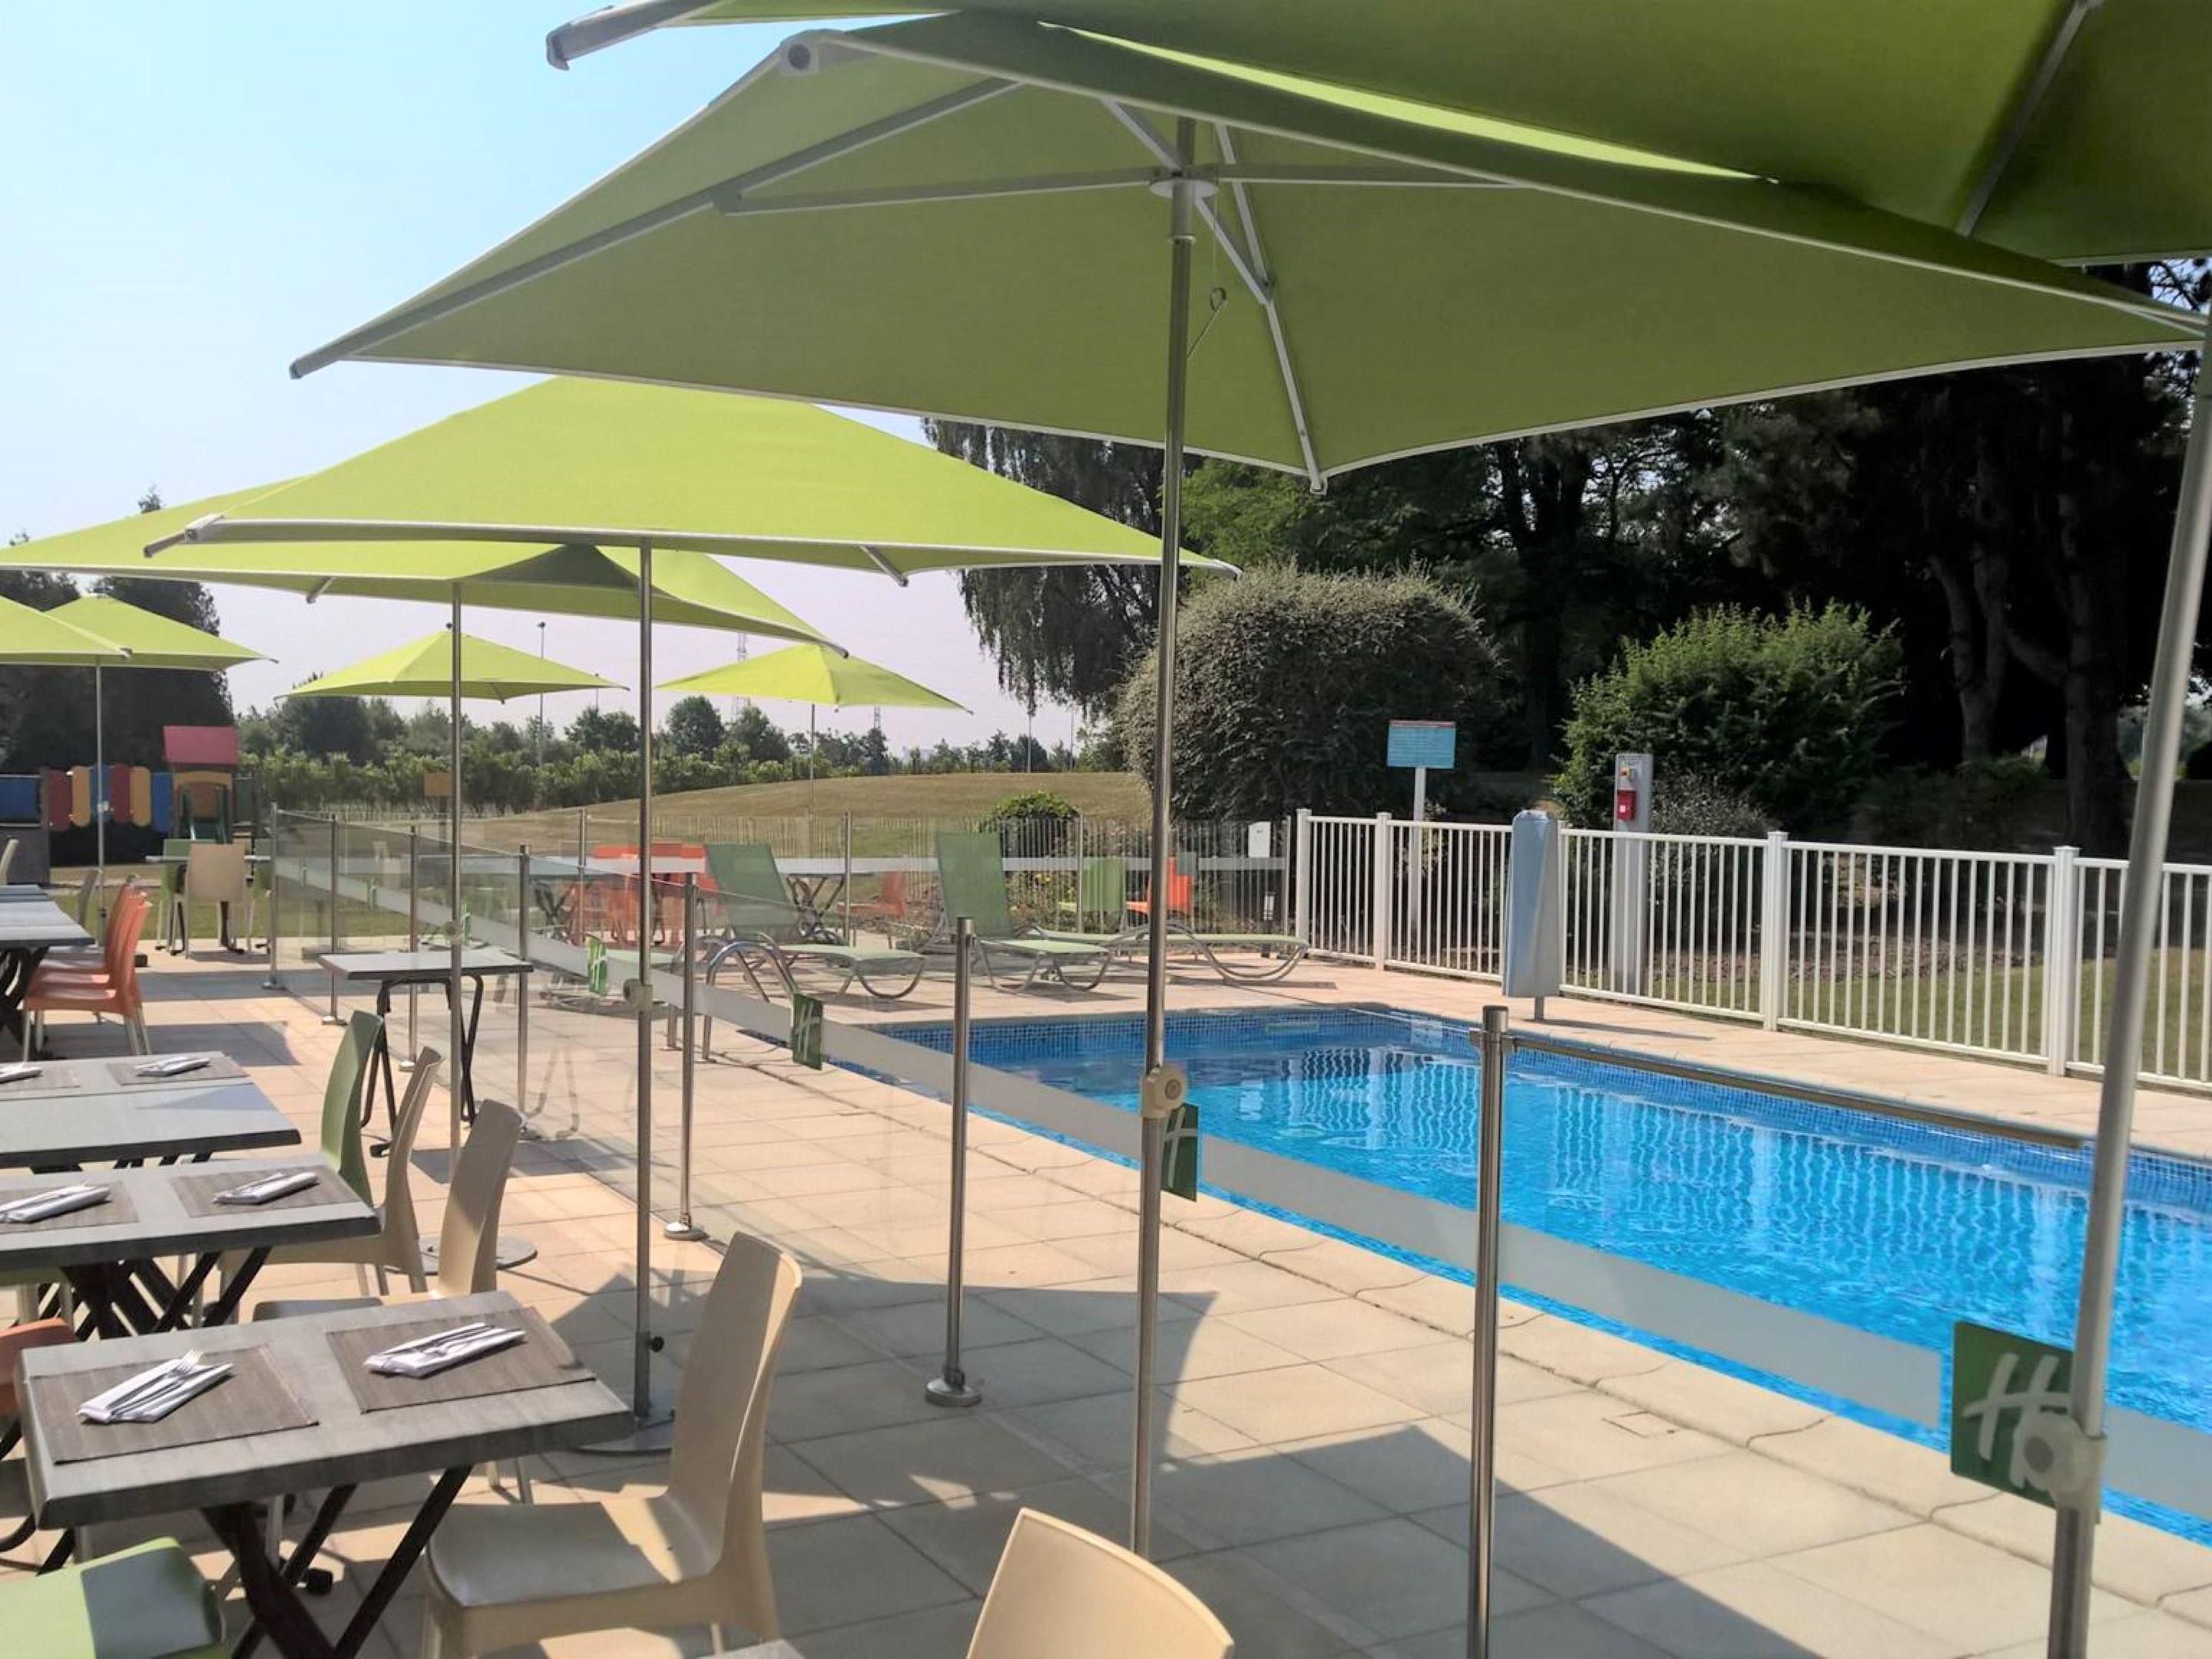 Savourez de délicieux cocktails en terrasse, profitez du soleil et de la piscine extérieure dans un parc arboré et calme de 2ha. Jeux extérieurs pour petits et grands dans un environnement sécurisé.